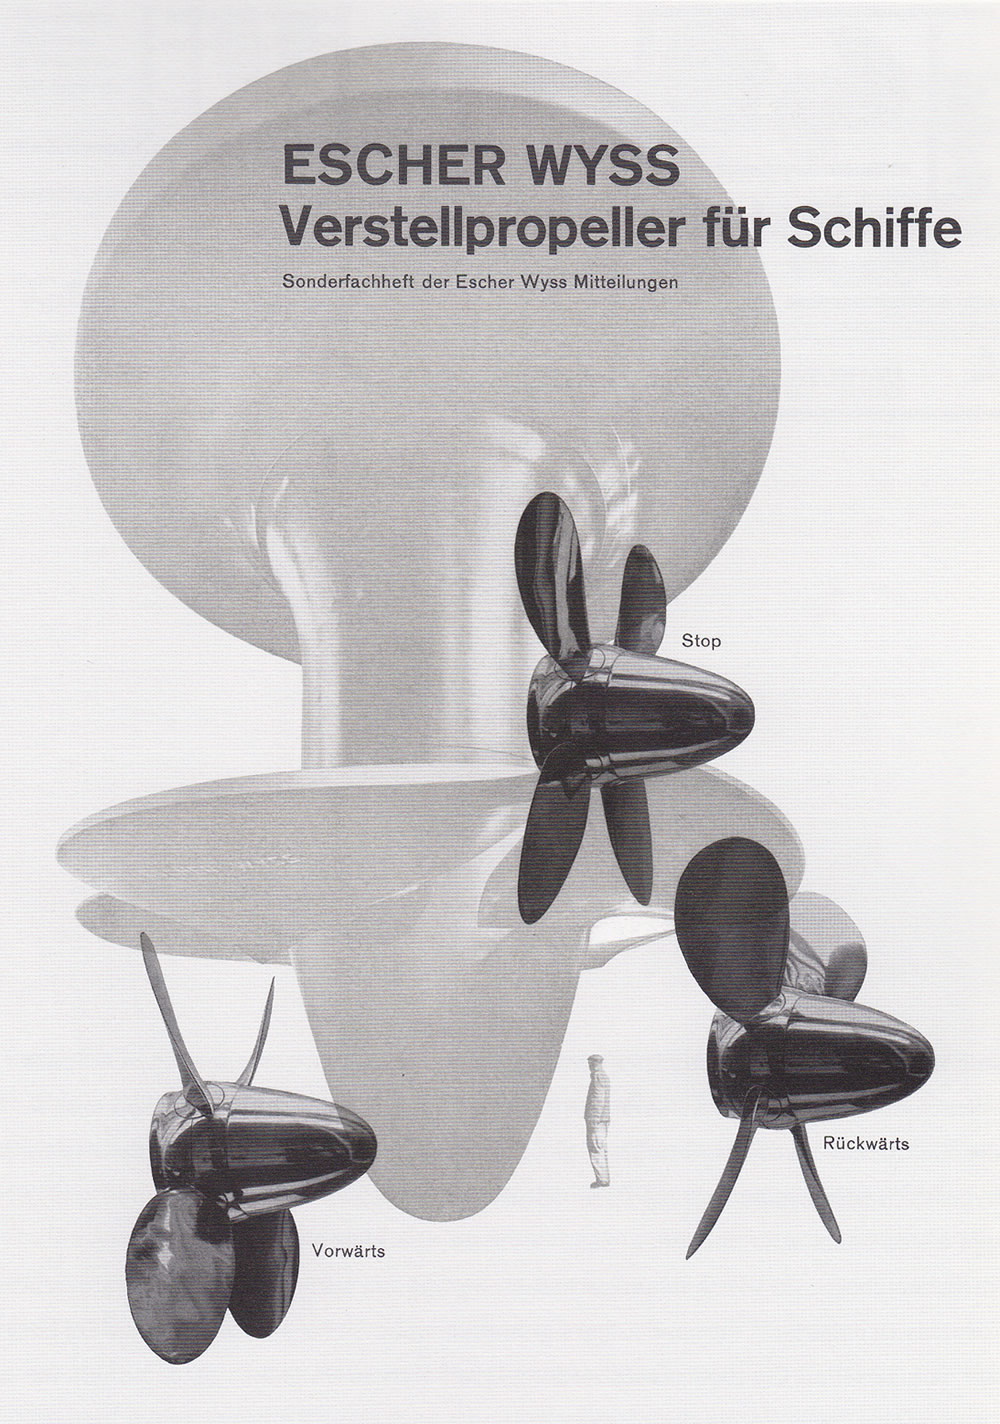 Richard Paul Lohse: Escher Wyss AG, Verstellpropeller fur Schiffe, 1945